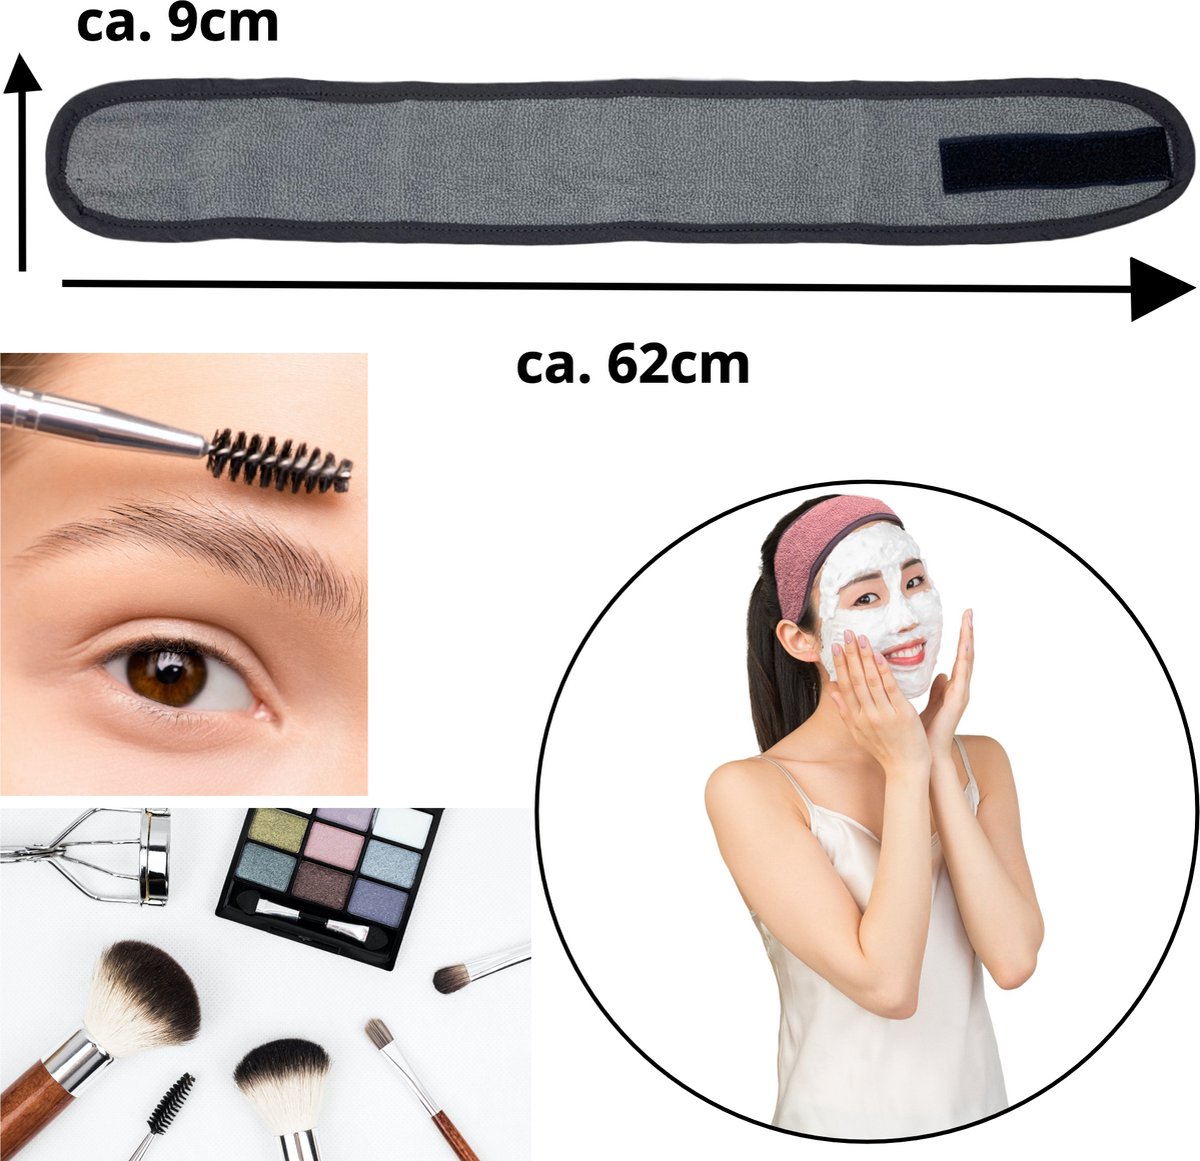 HOMELEVEL set van 3 haarbanden - Badstof van 100% katoen - Voor make-up, gezichtsreiniging, gezichtsmasker, sporten - In grijs/roze/lichtgrijs